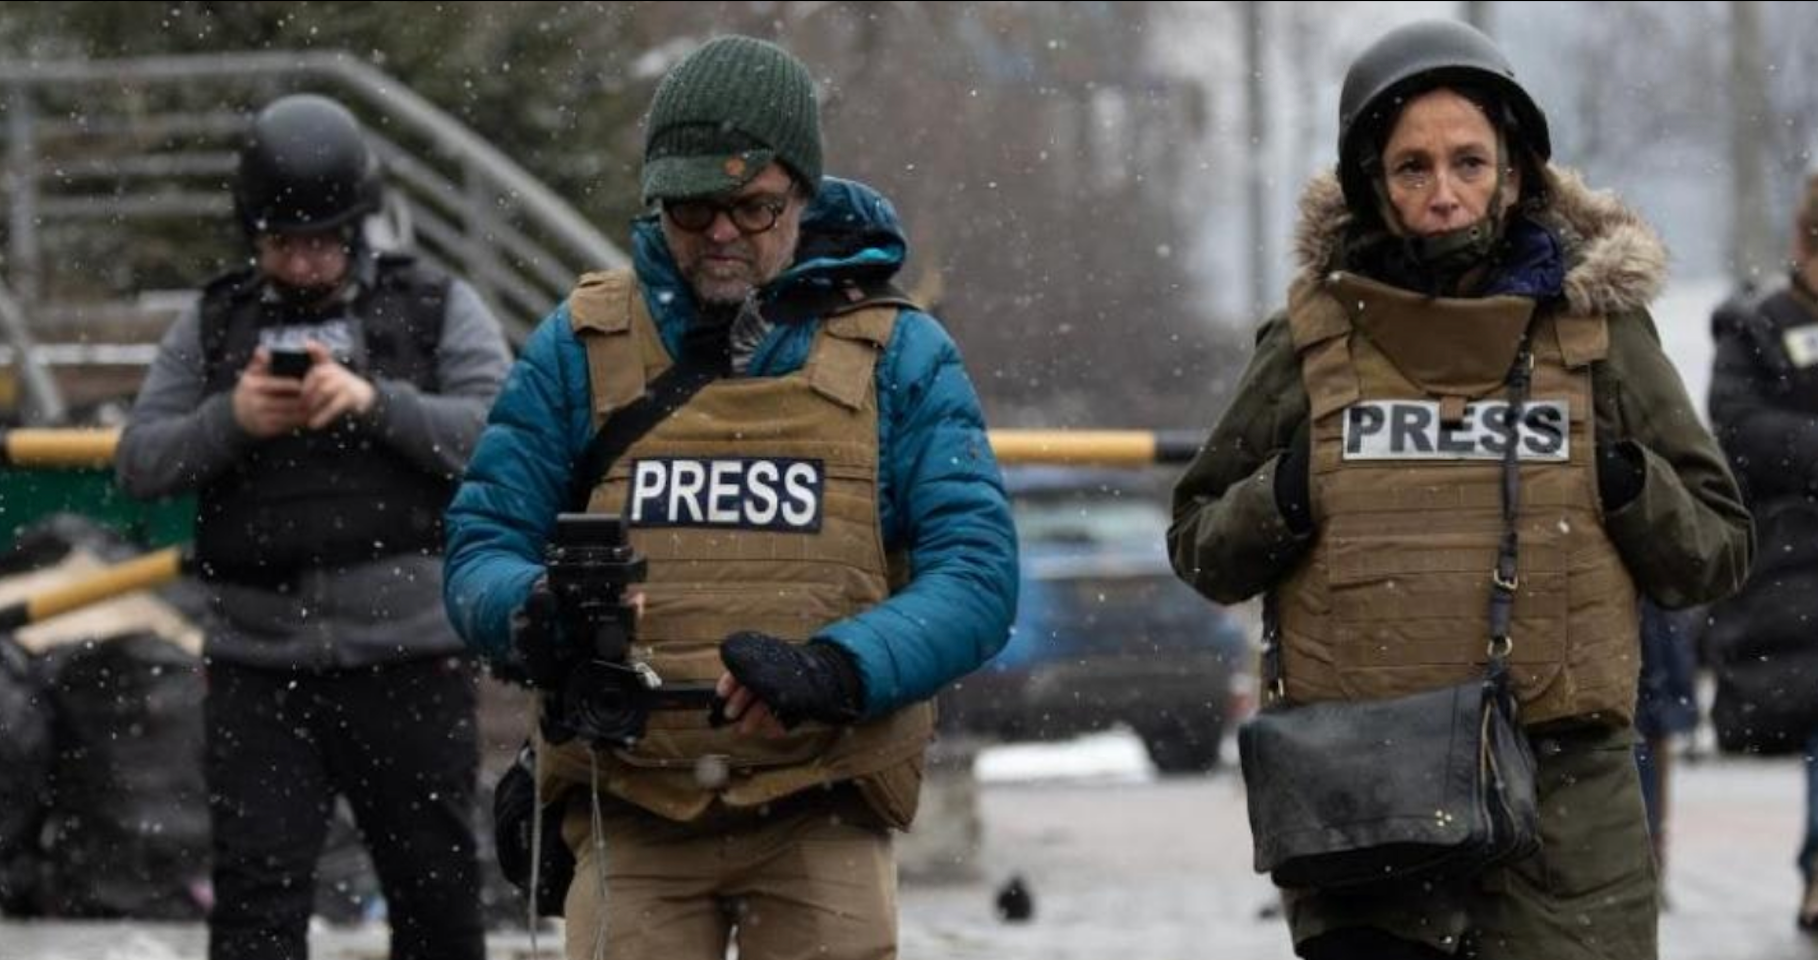 Reporters in Ukraine